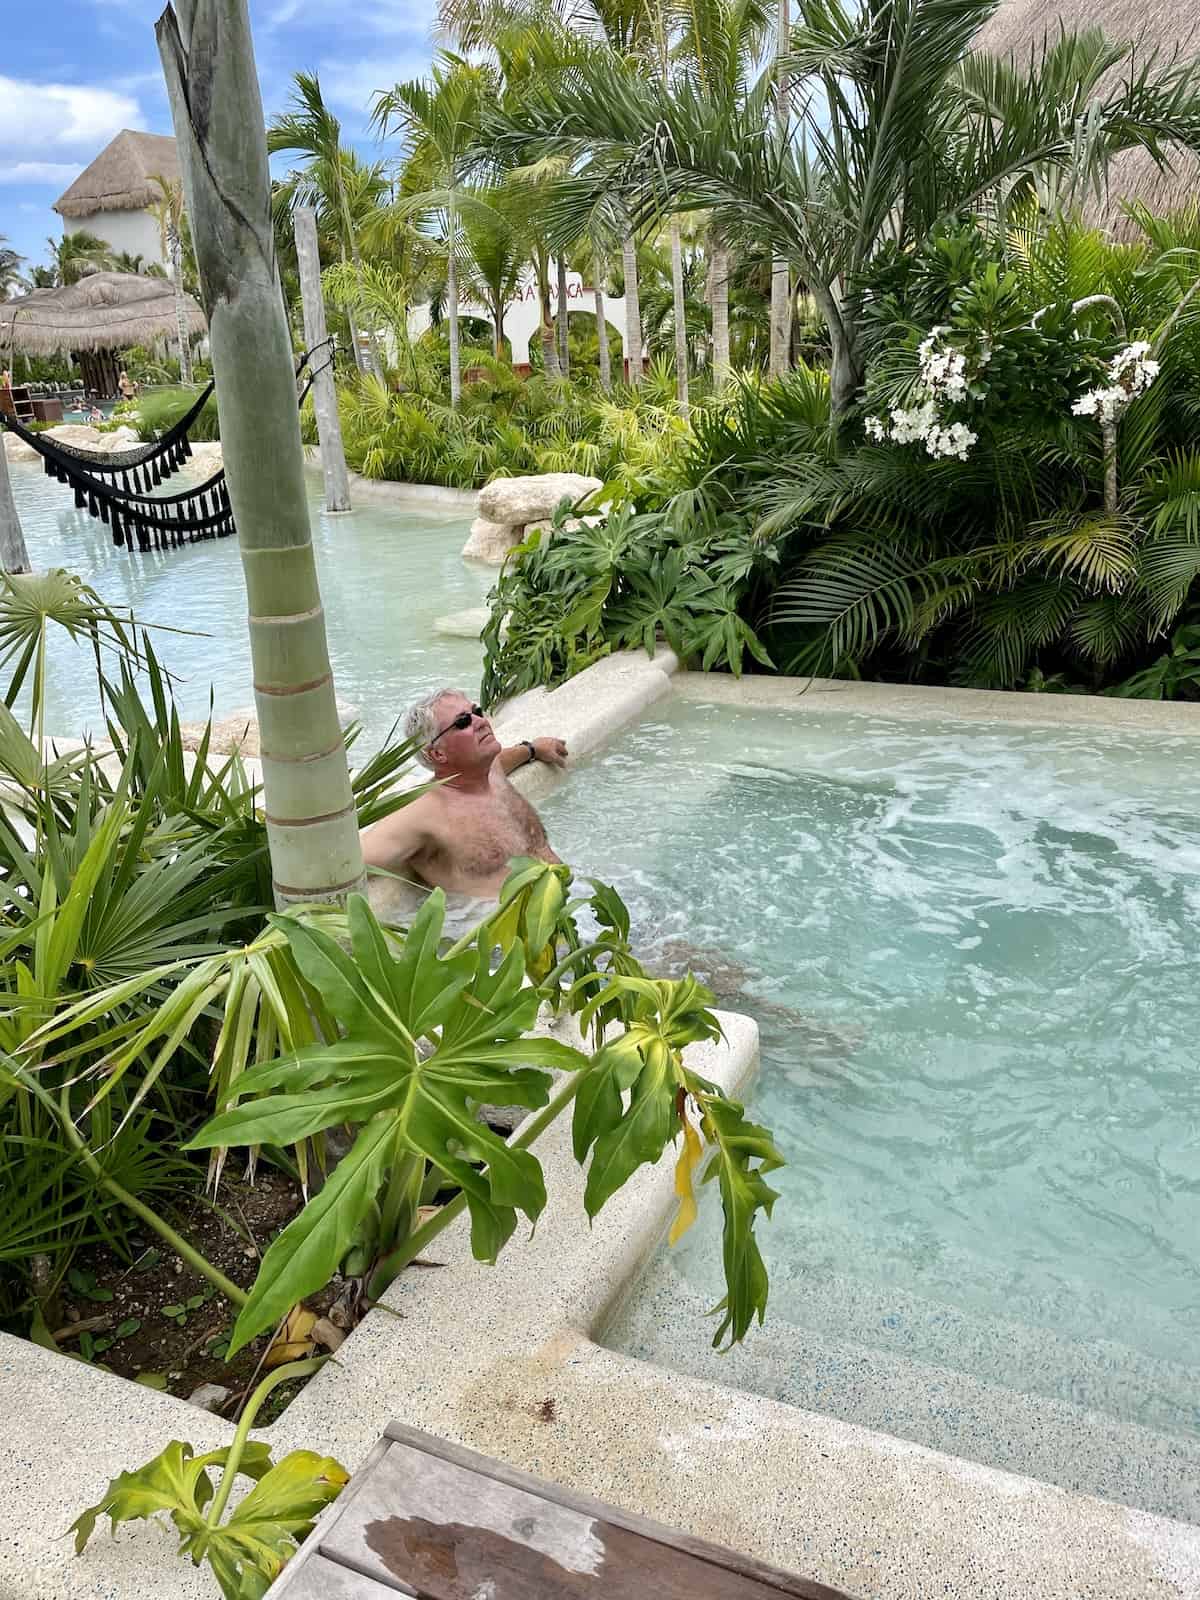 Man relaxing in pool.